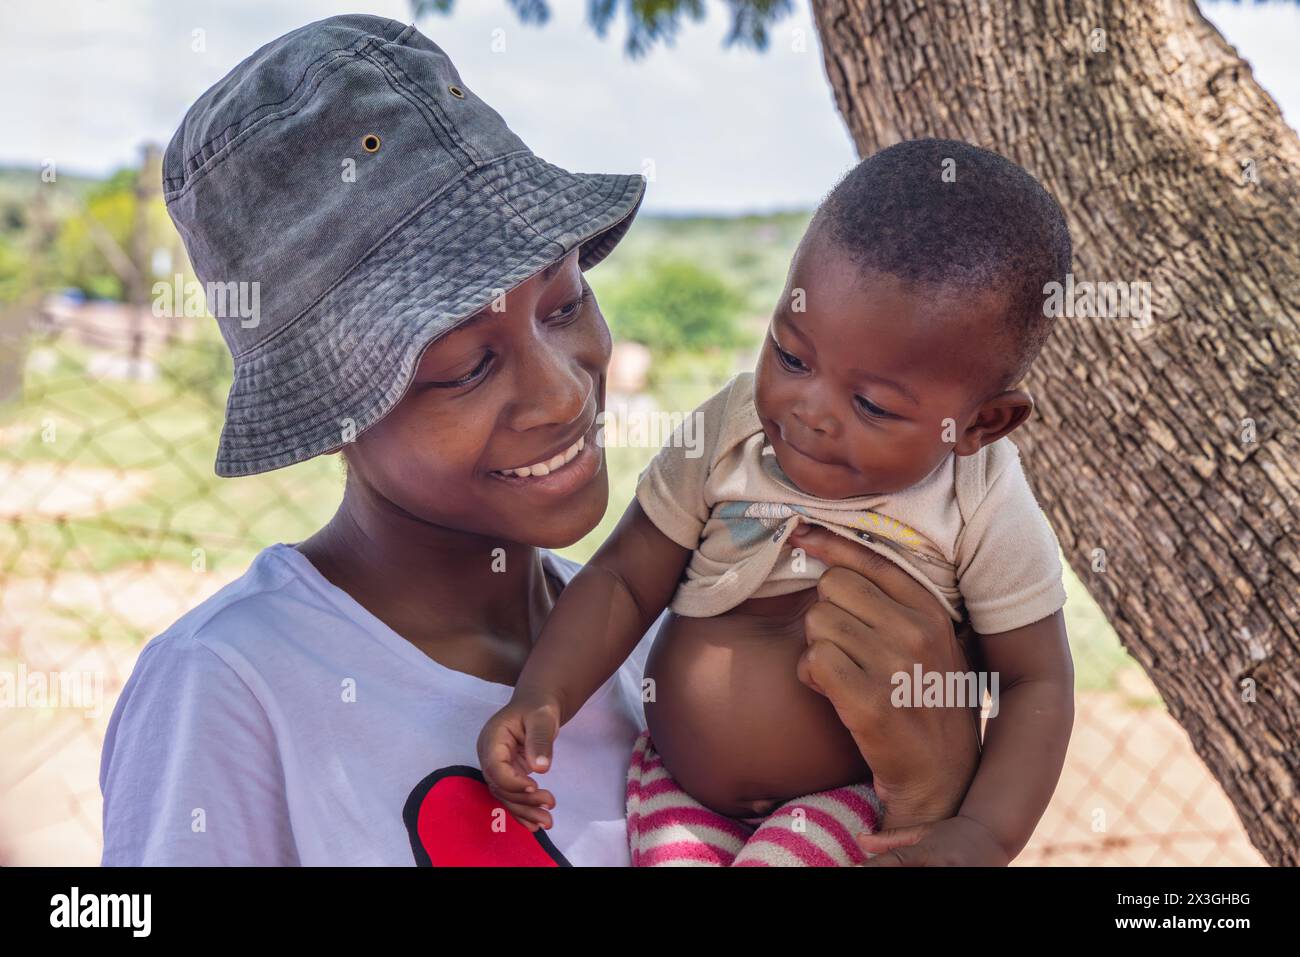 adolescente africaine de village tenant un bébé, grossesse non désirée Banque D'Images